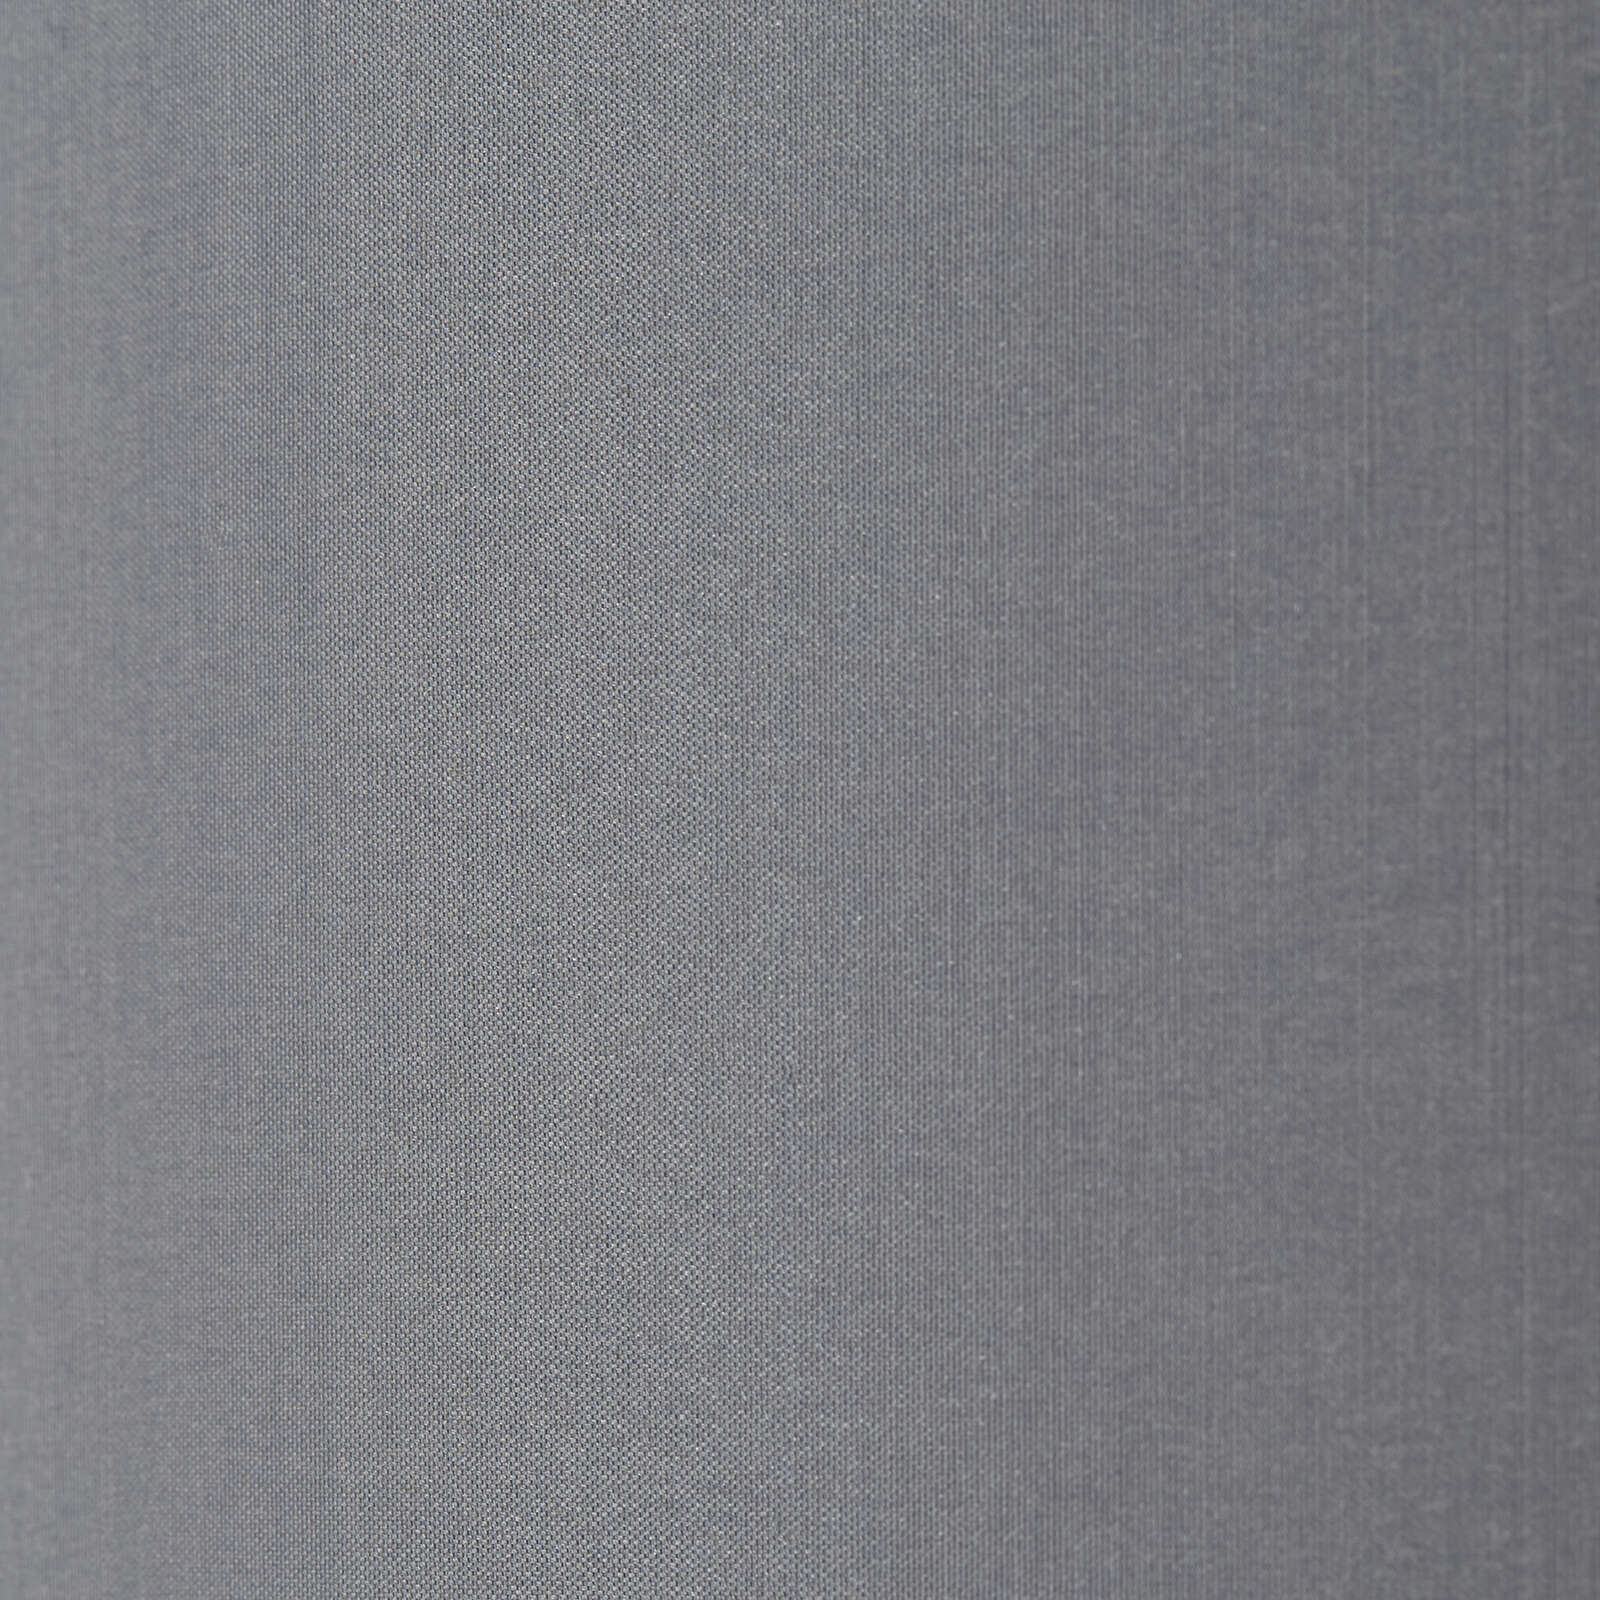             Bogenstandleuchte aus Textil - Elise 2 – Grau
        